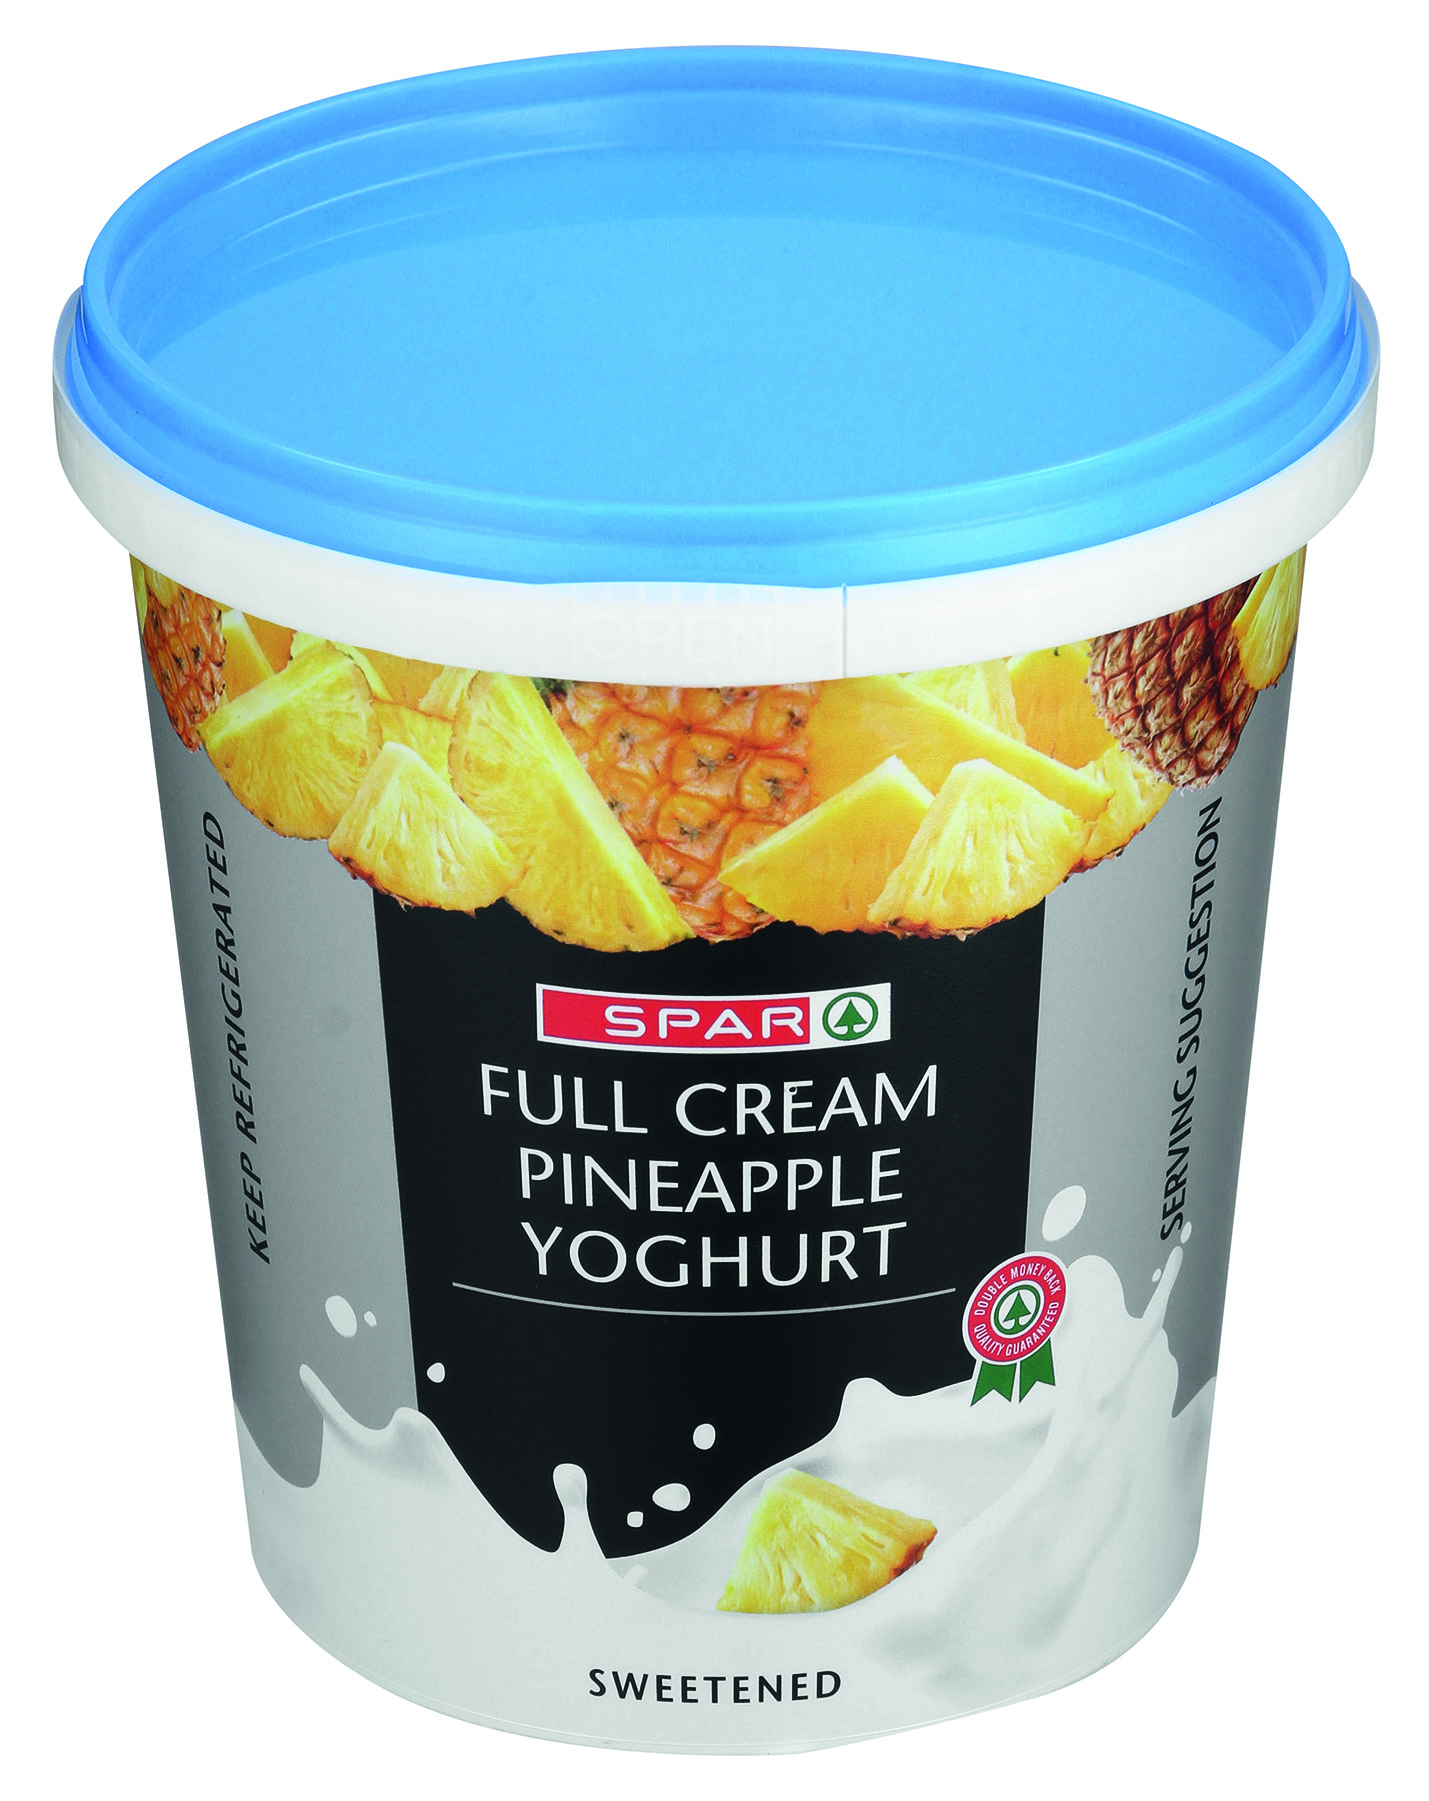 full cream yoghurt - pineapple 